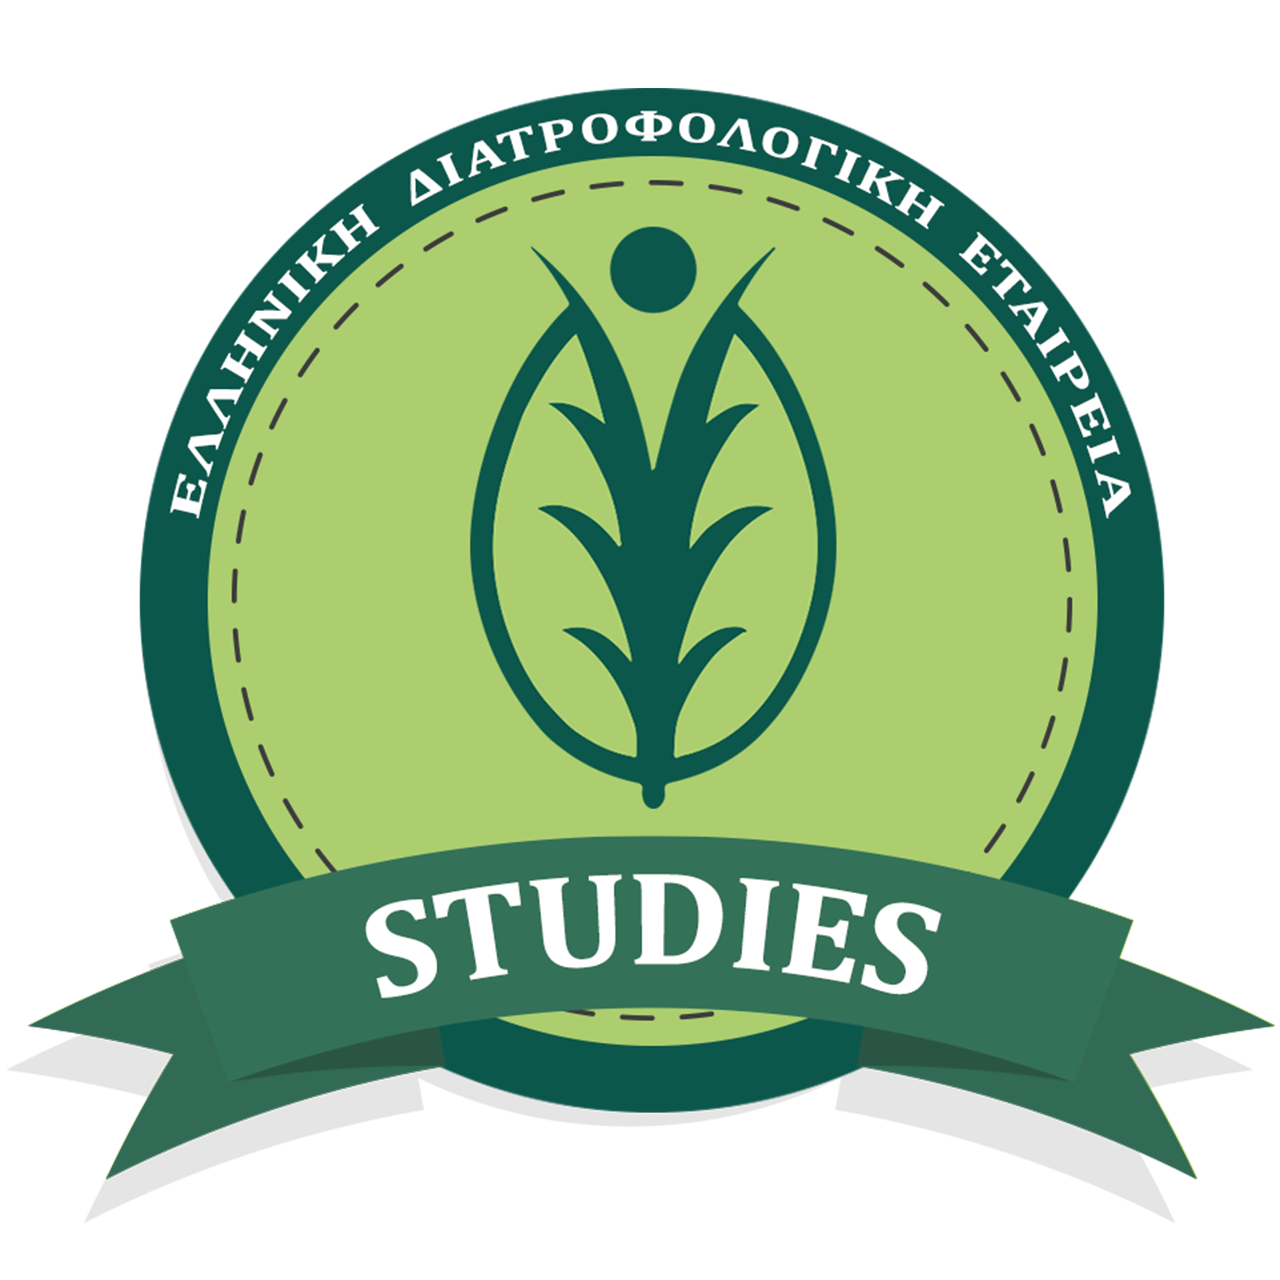 ΕΛ.Δ.Ε. STUDIES - Ελληνική Διατροφολογική Εταιρεία